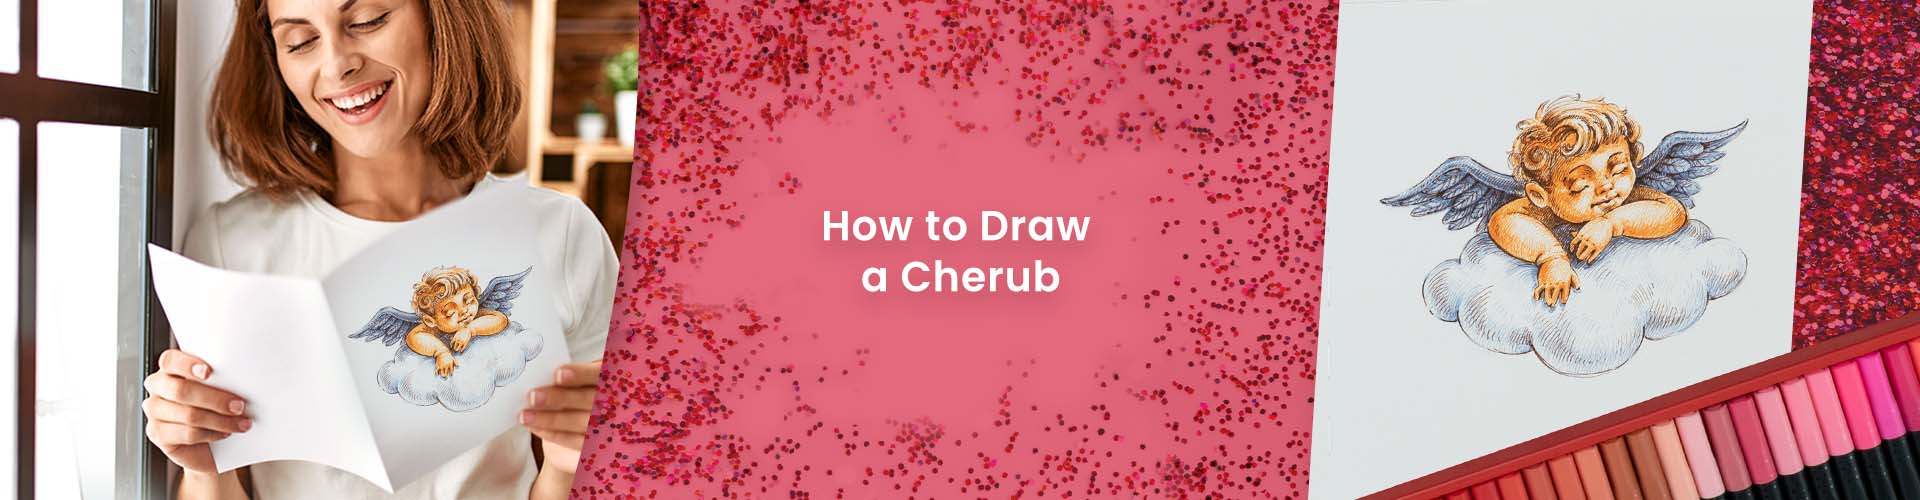 How to Draw a Cherub